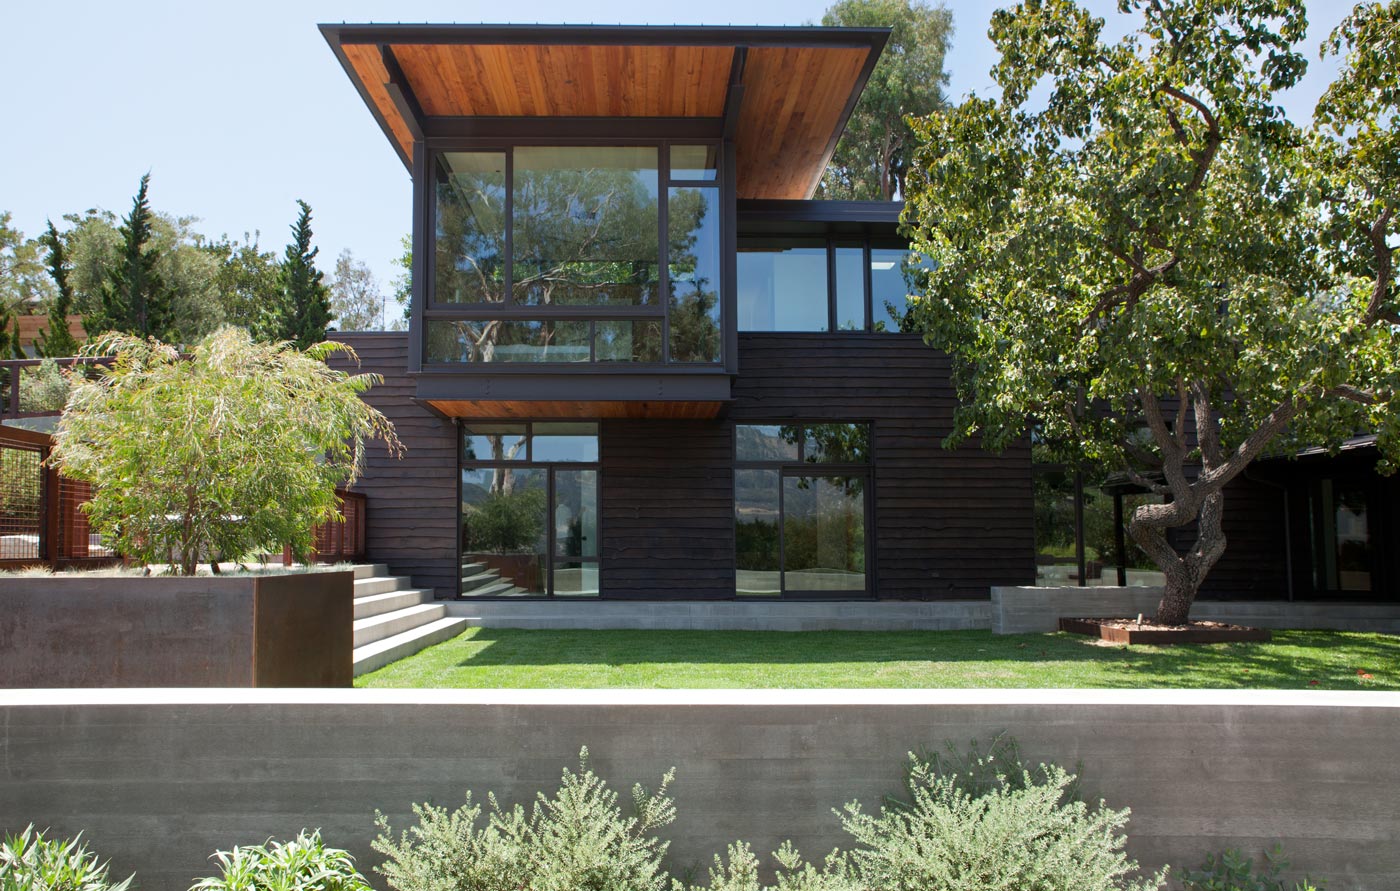 Like Oak Residence designed by Tom Kundig